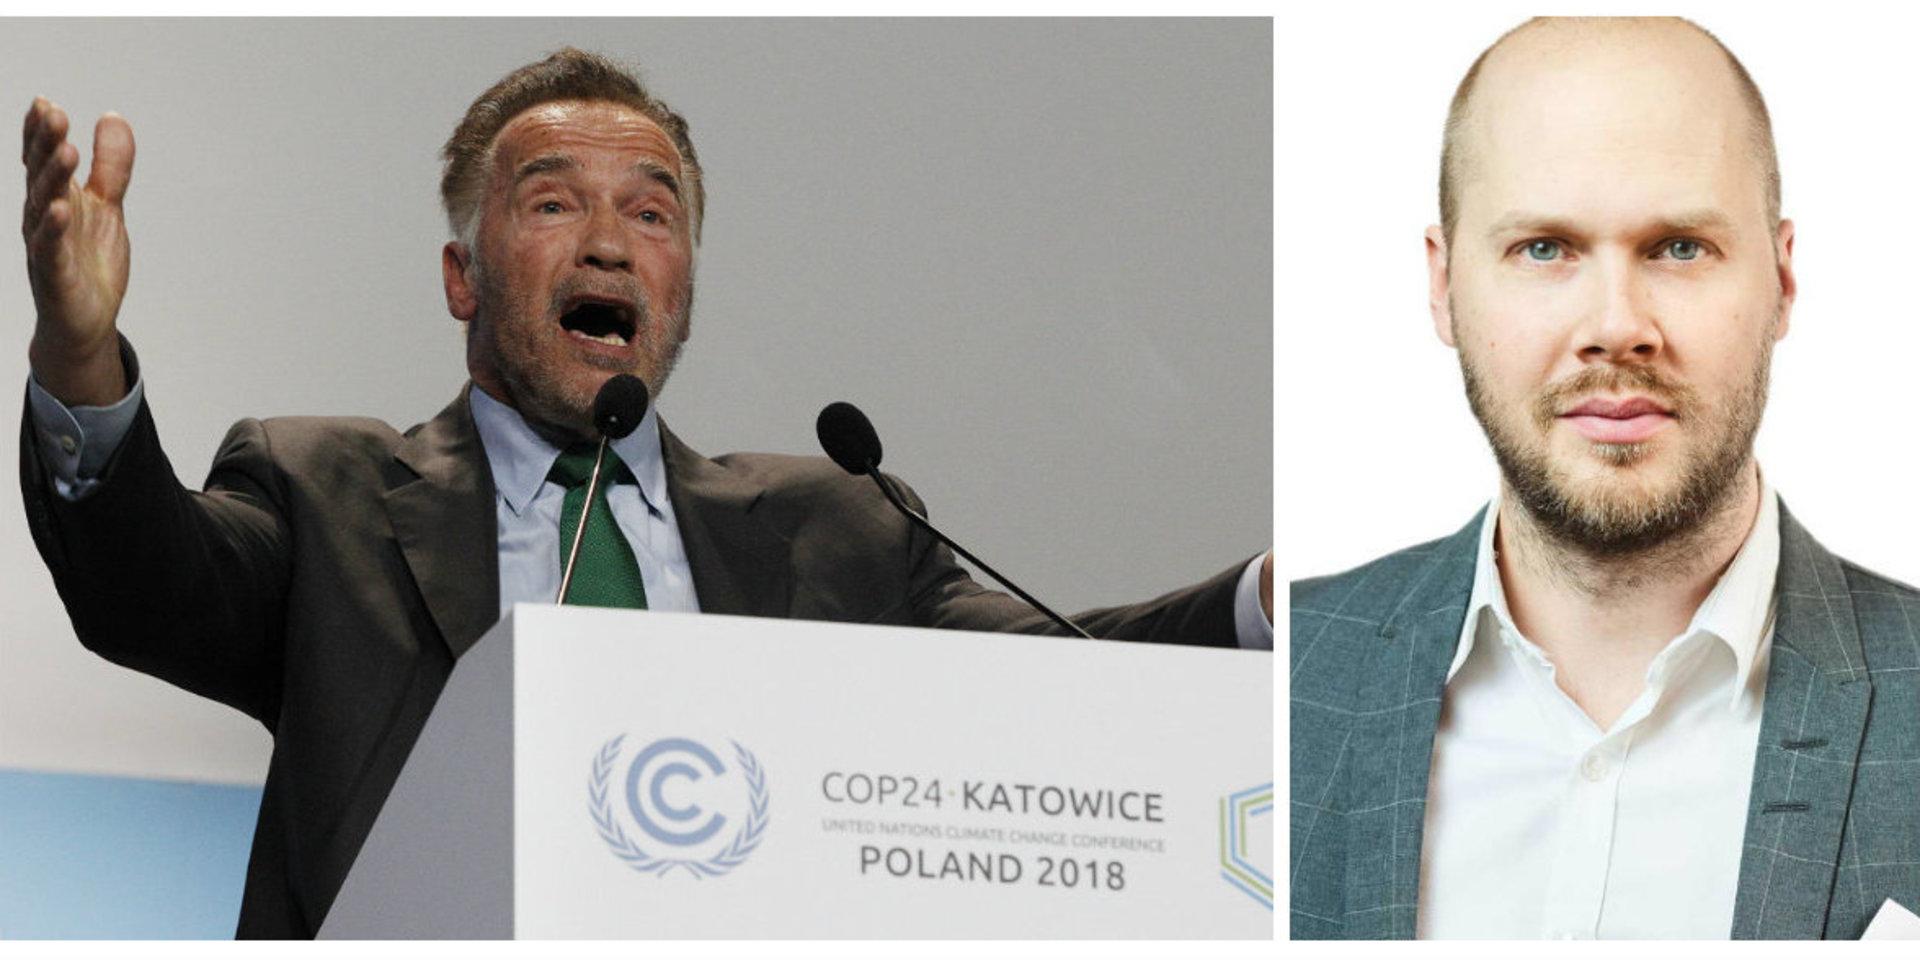 Arnold Schwarzenegger talade på klimatmötet. Men lyssnar allmänheten?